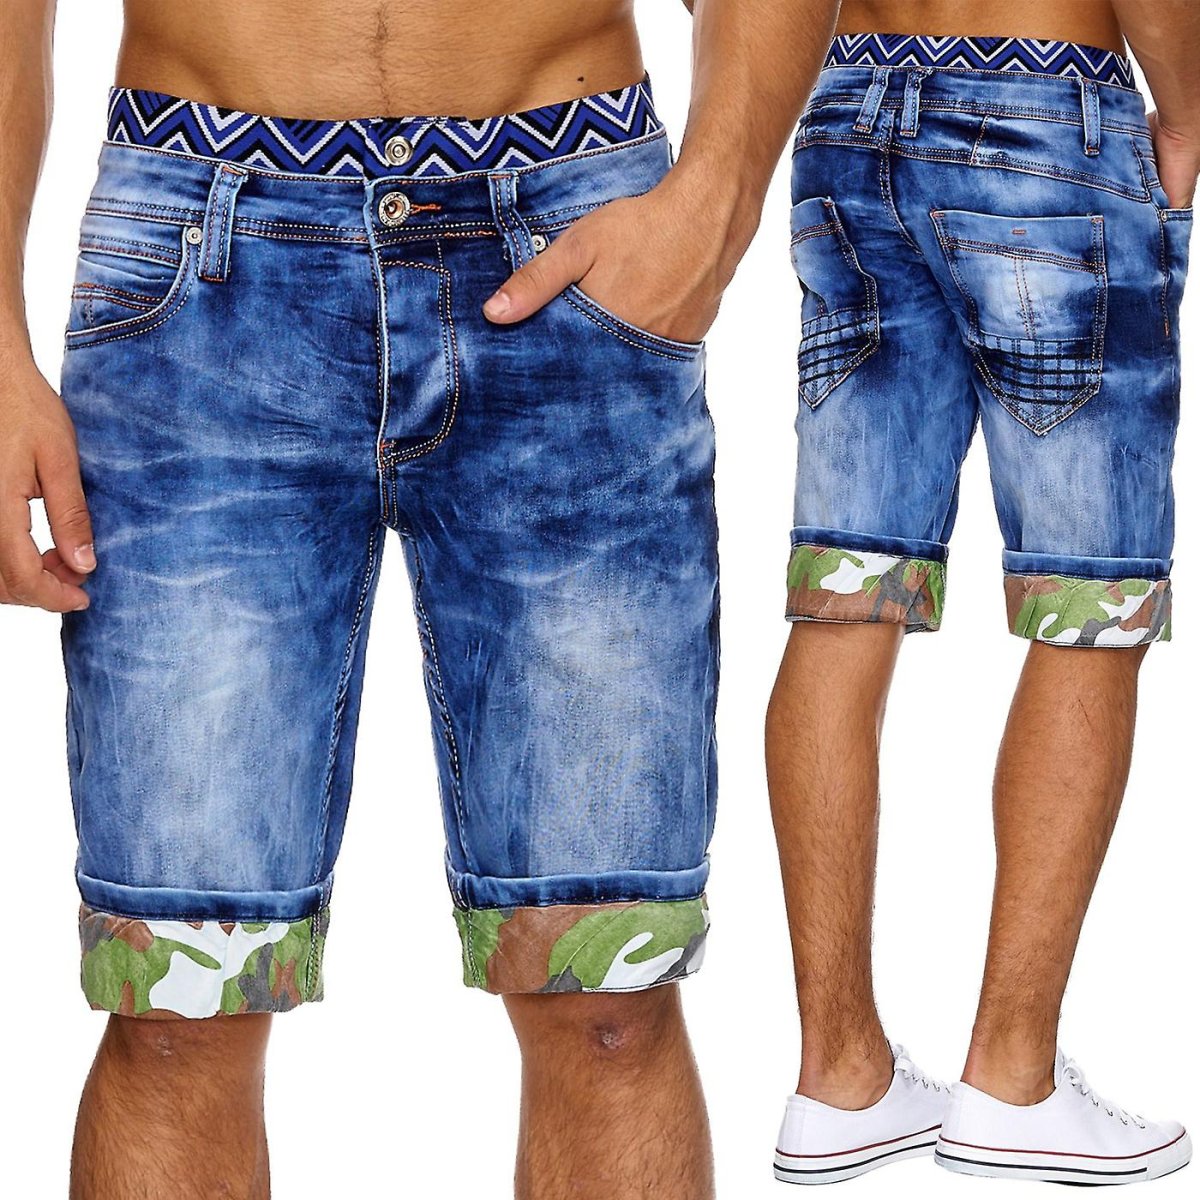 Men in Oversized Bermuda shorts